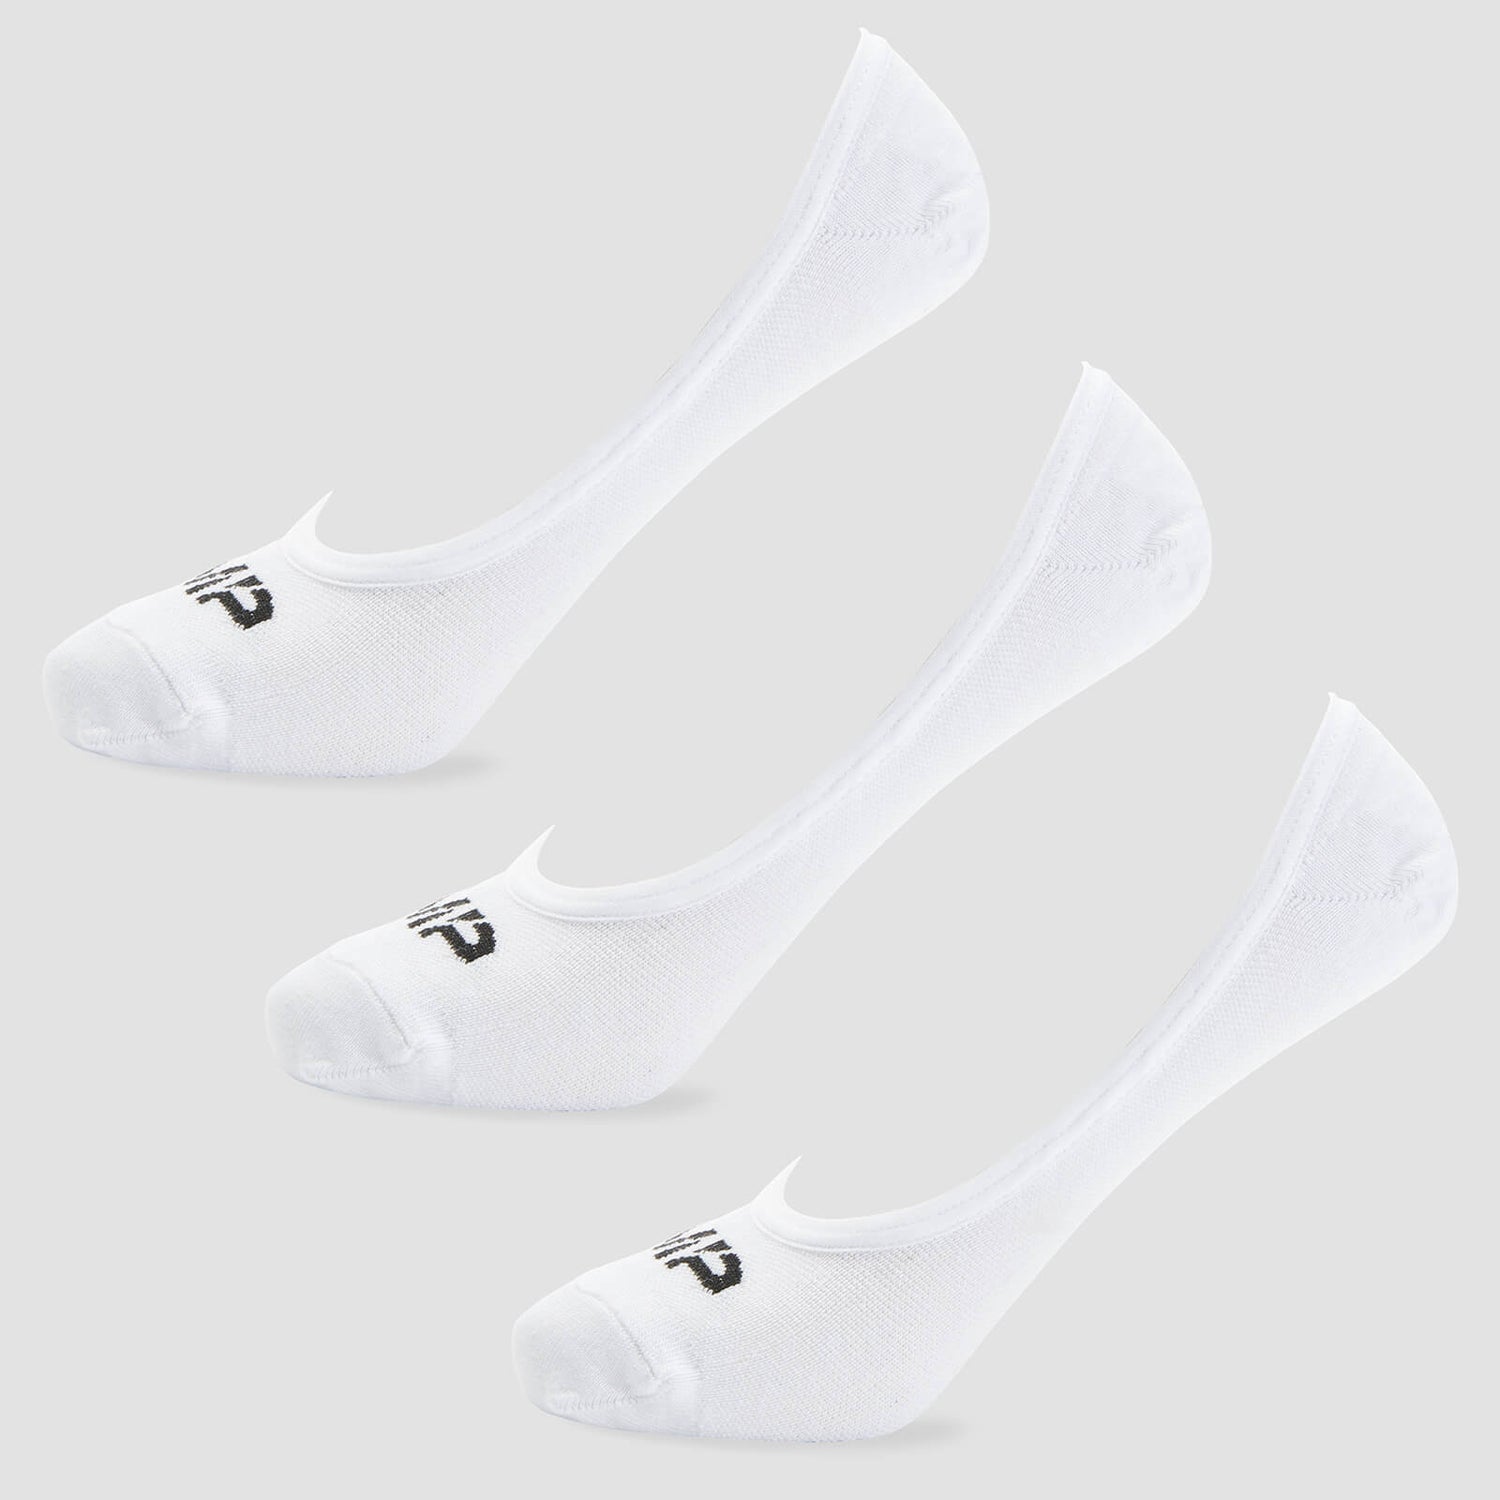 MP Men's Invisible Socks - White (3 Pack) - UK 6-8